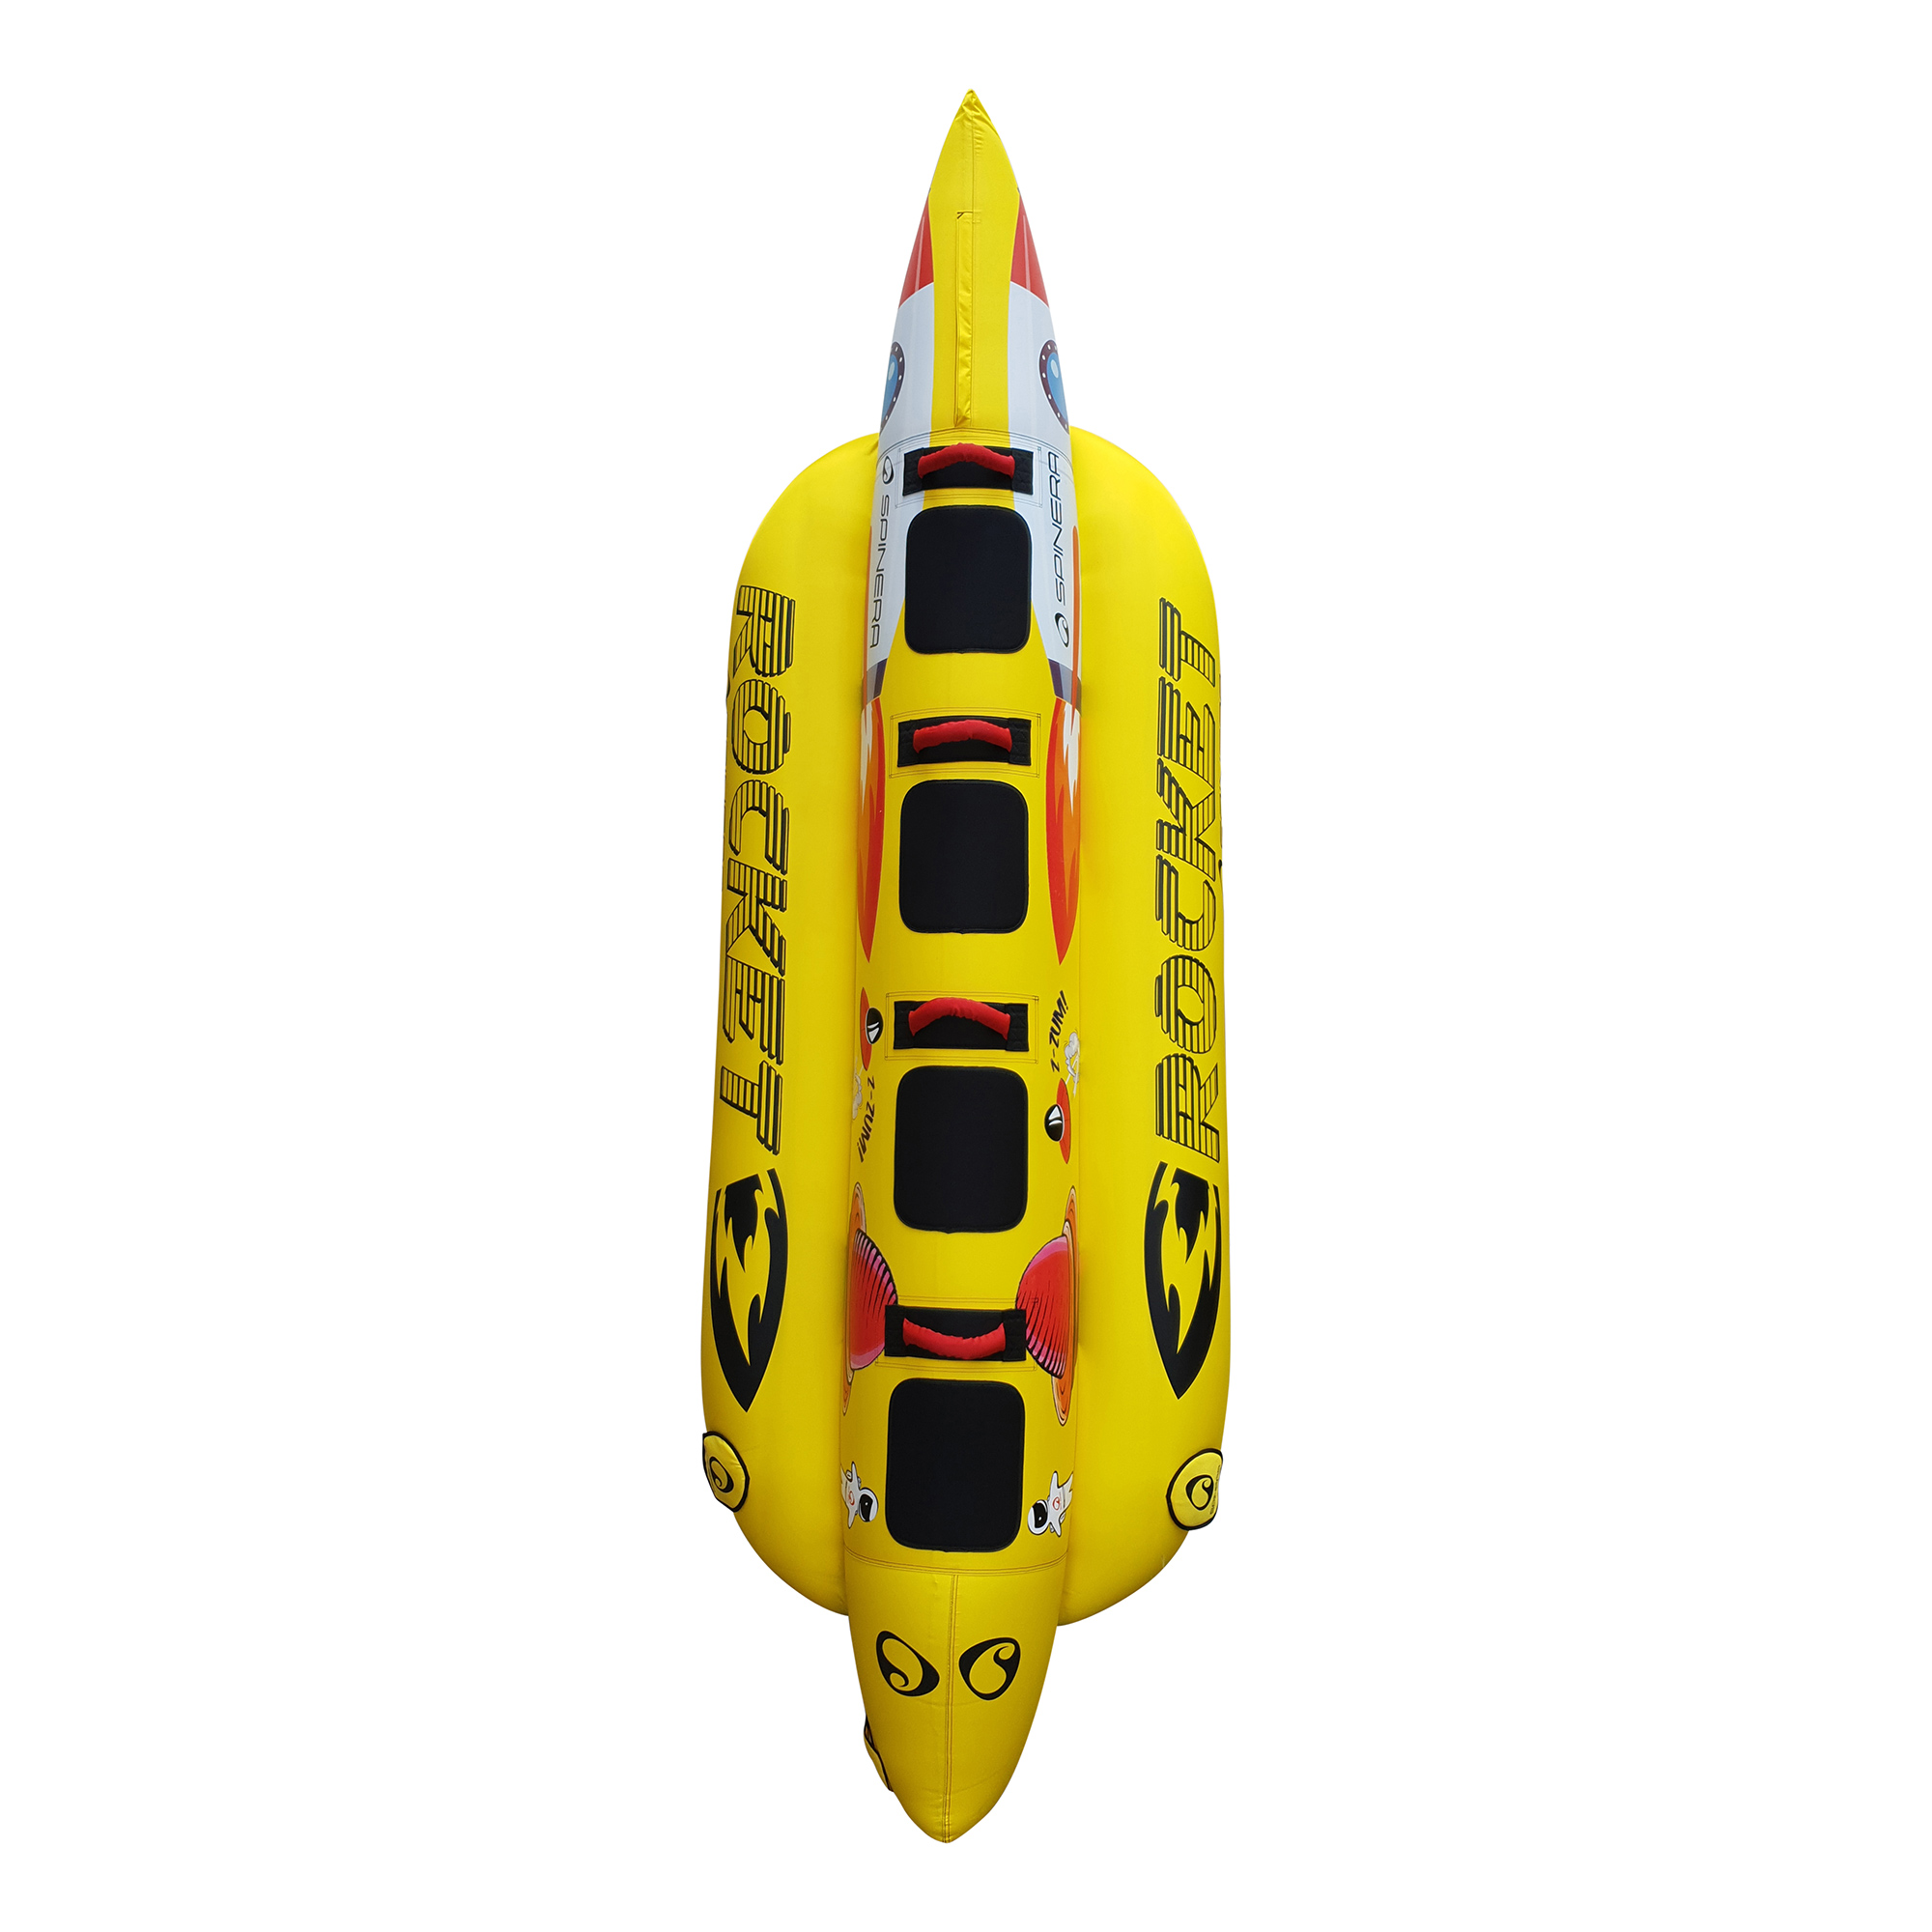 Spinera Rocket 4